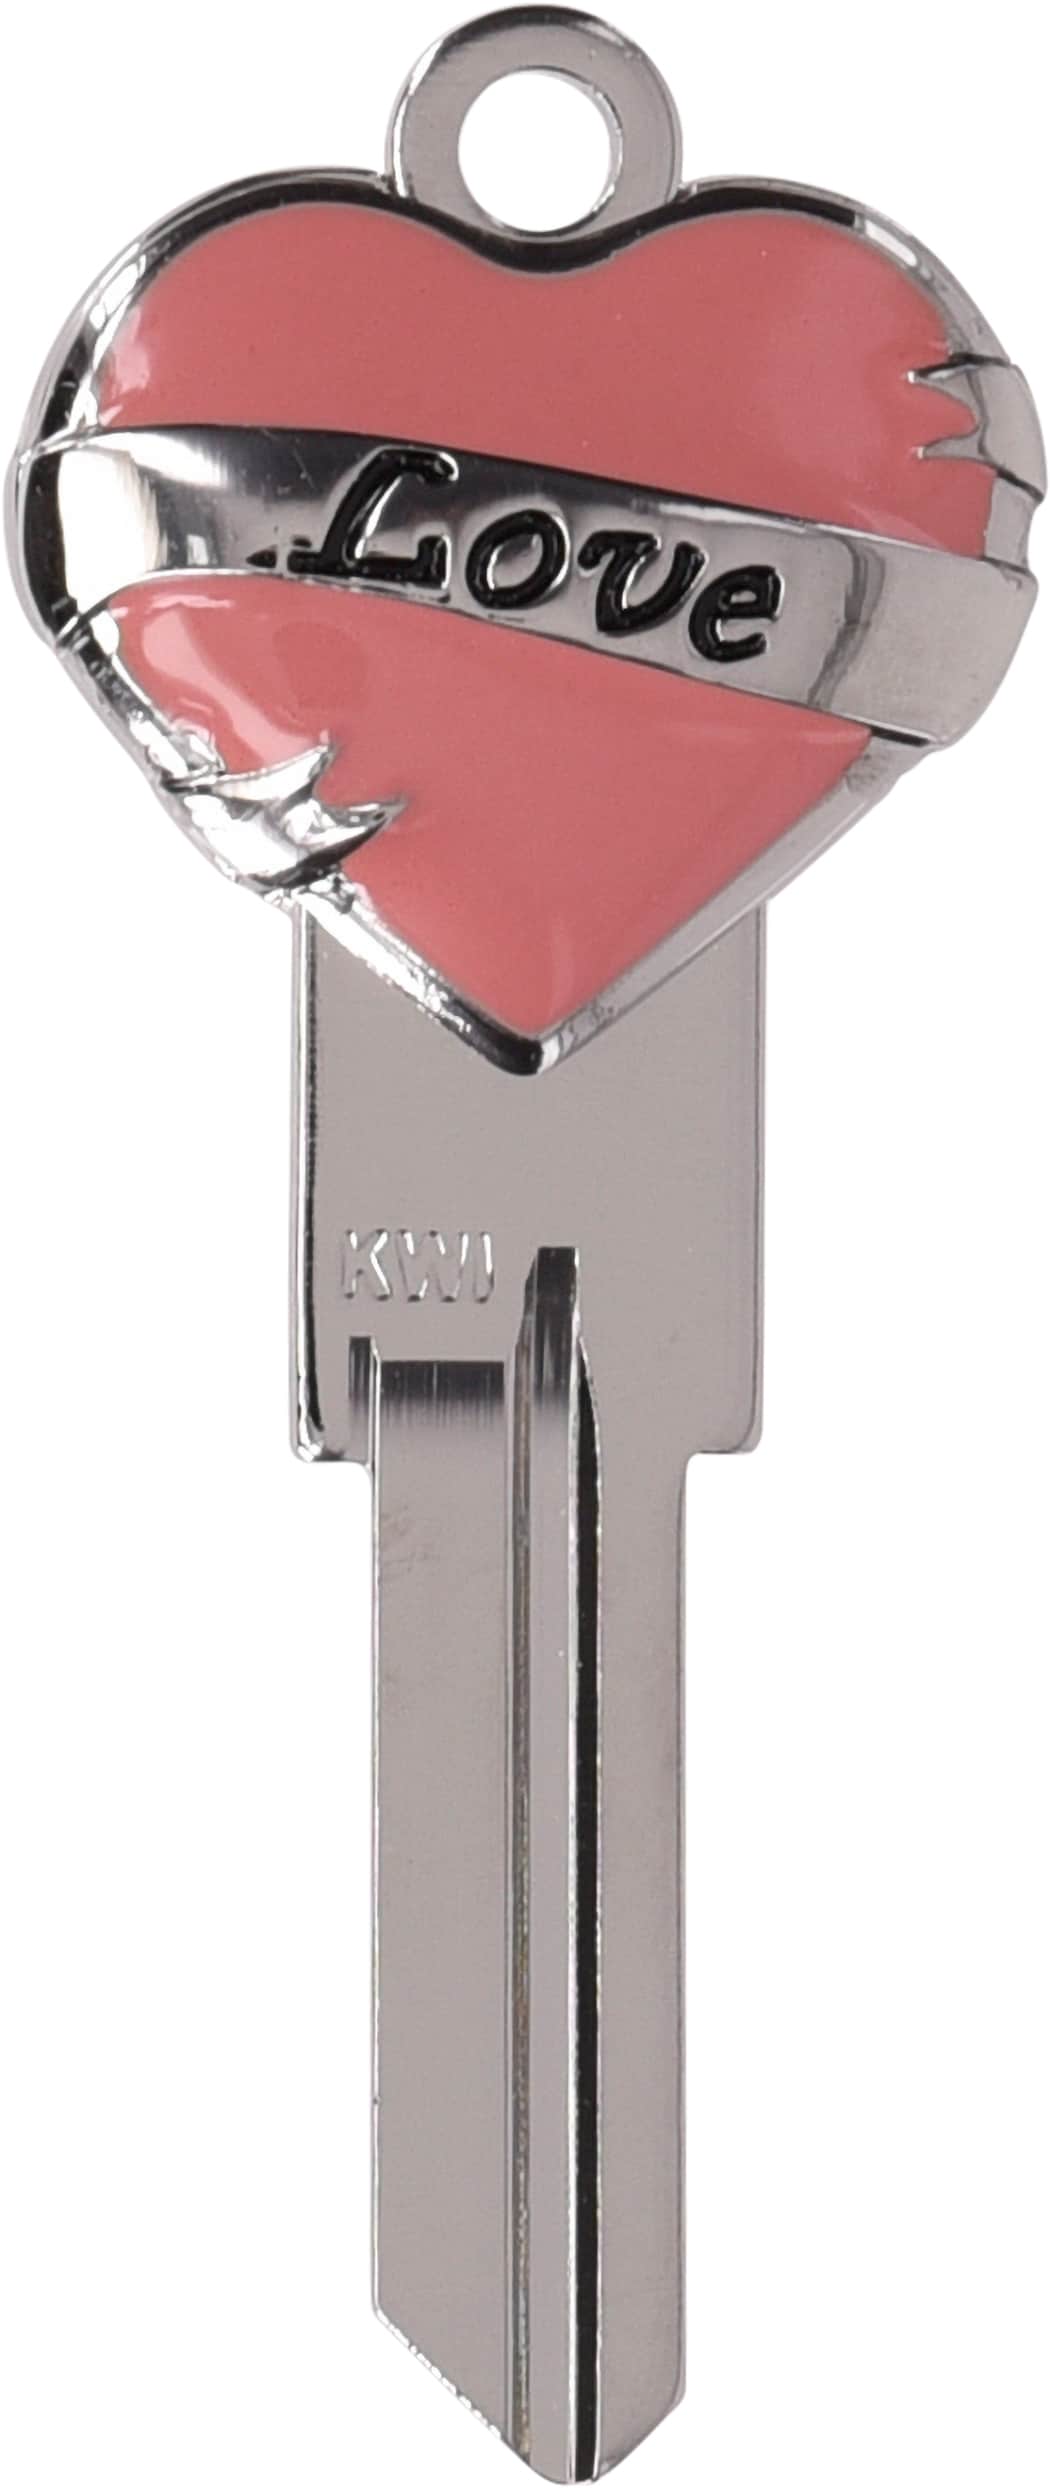 Minute Key Silver #66 Kw1 Brass House/Entry Key Blank in the Key Blanks ...